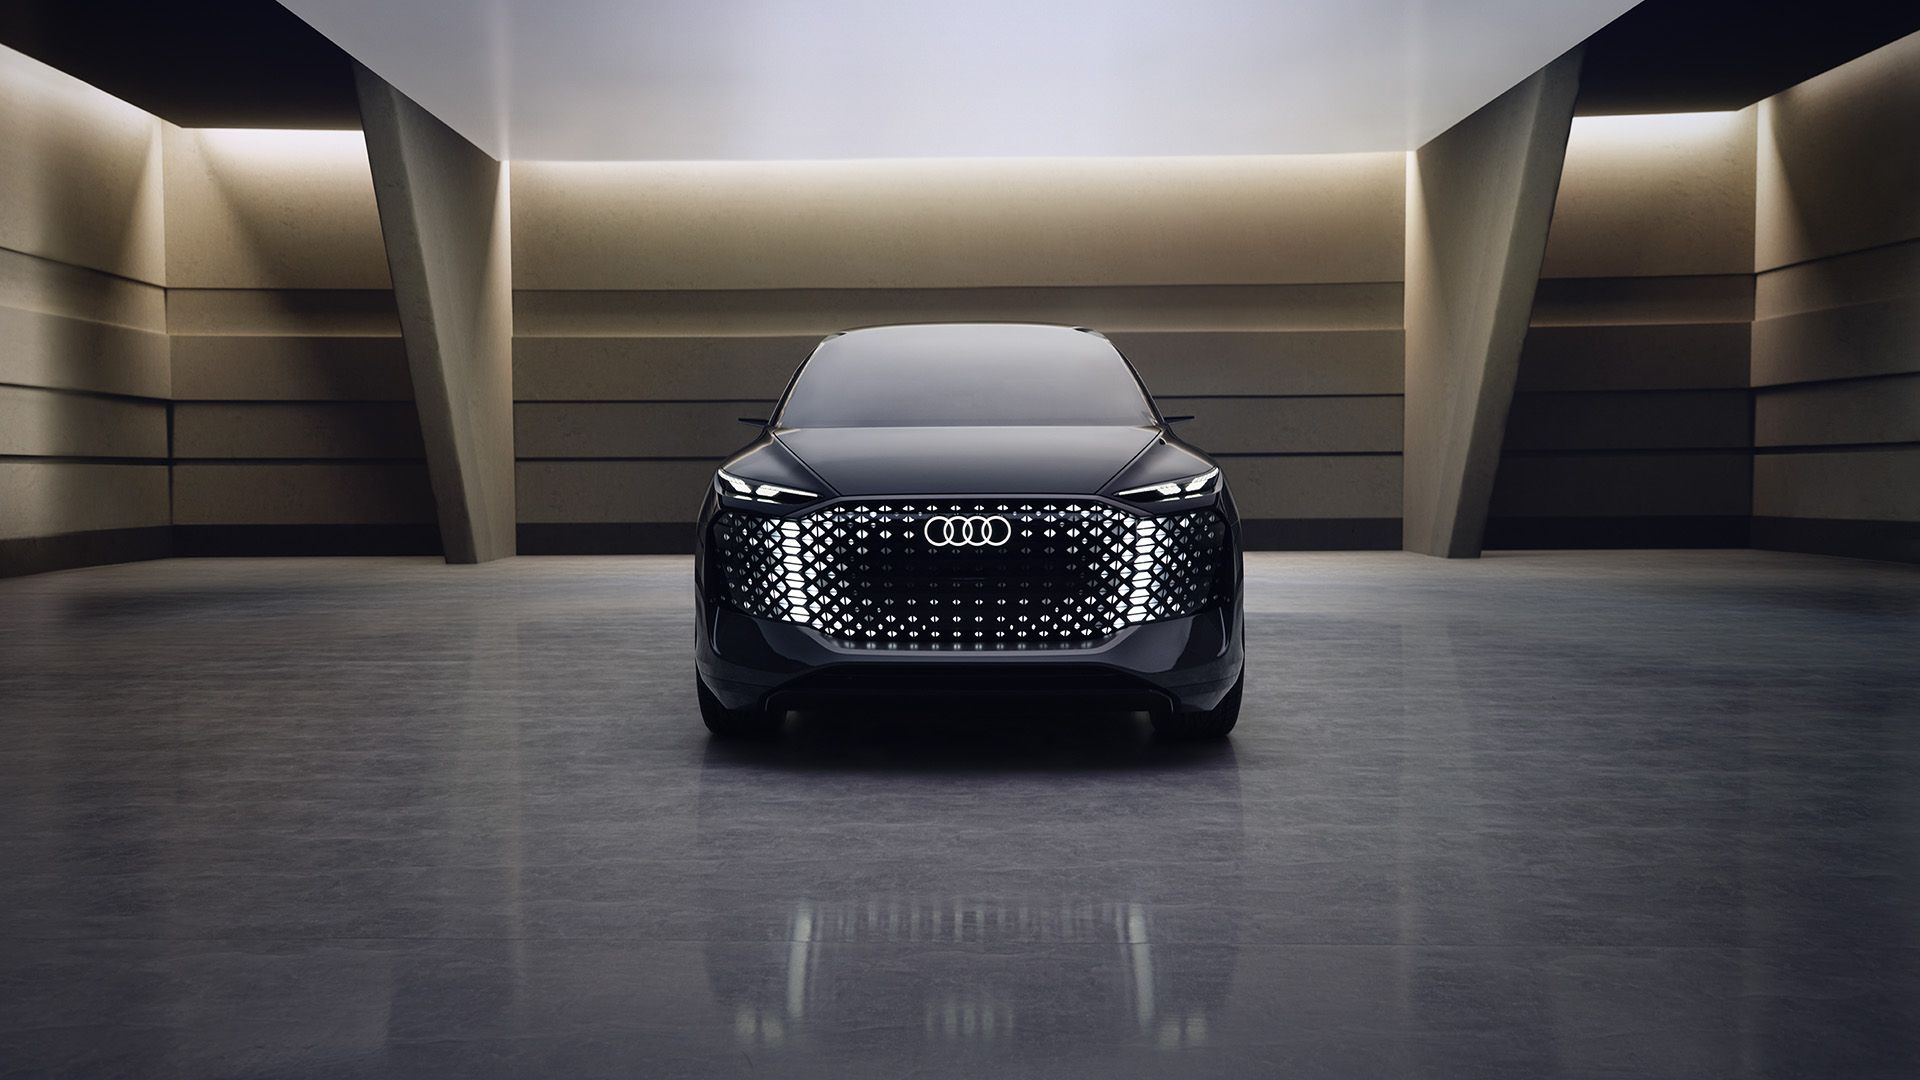 Vooraanzicht van de Audi urbansphere concept met verlichte leds.